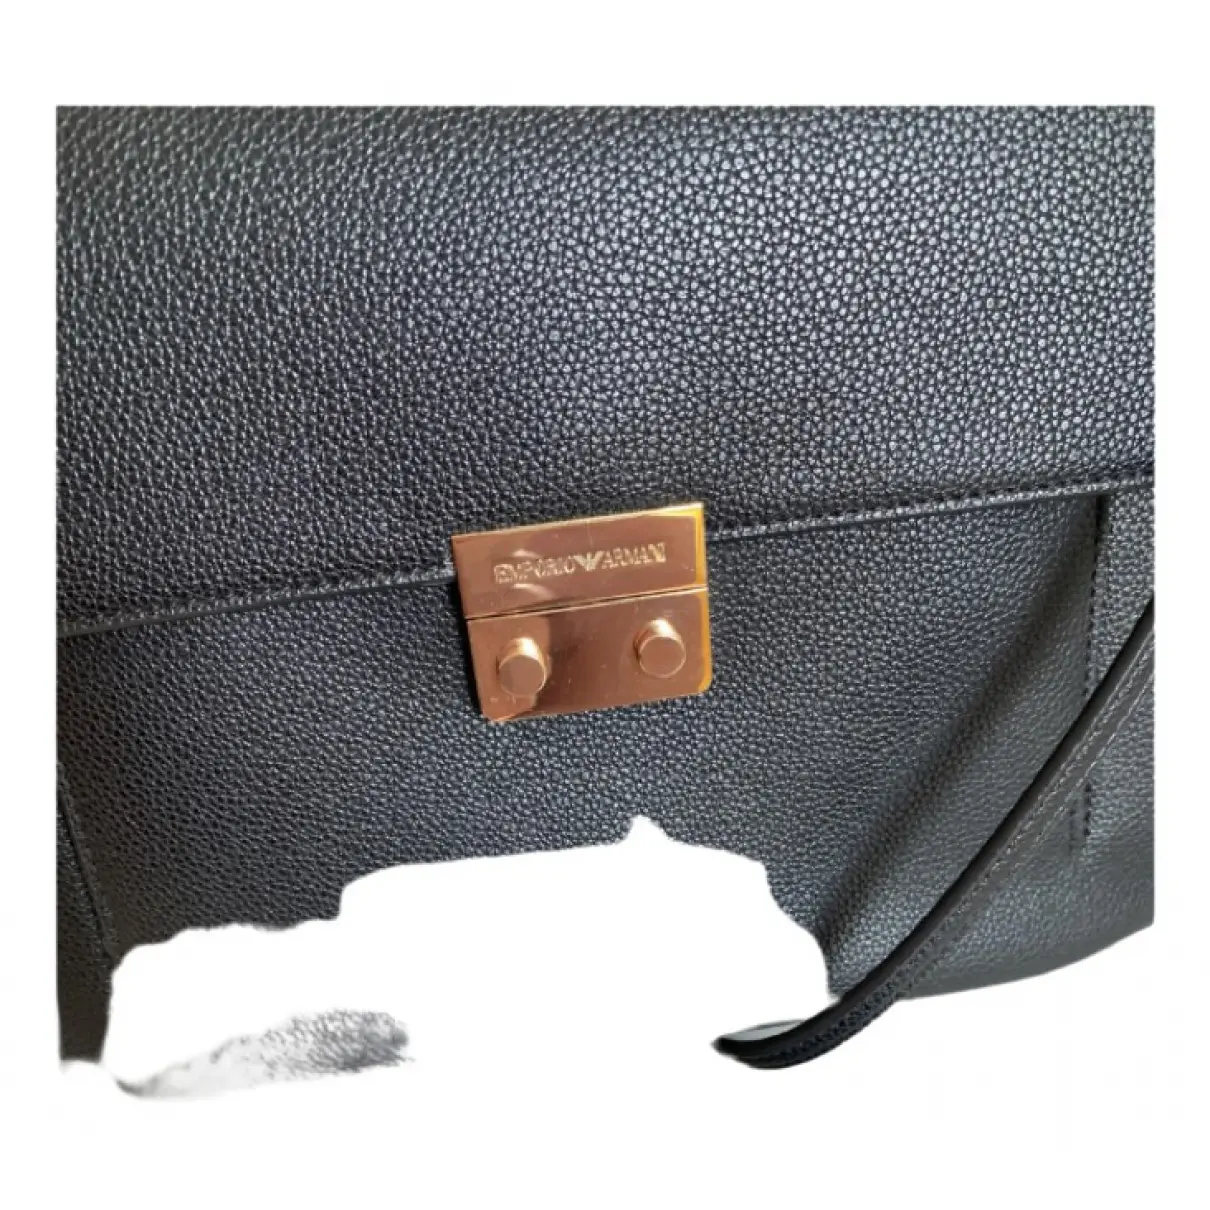 Buy Emporio Armani Handbag online